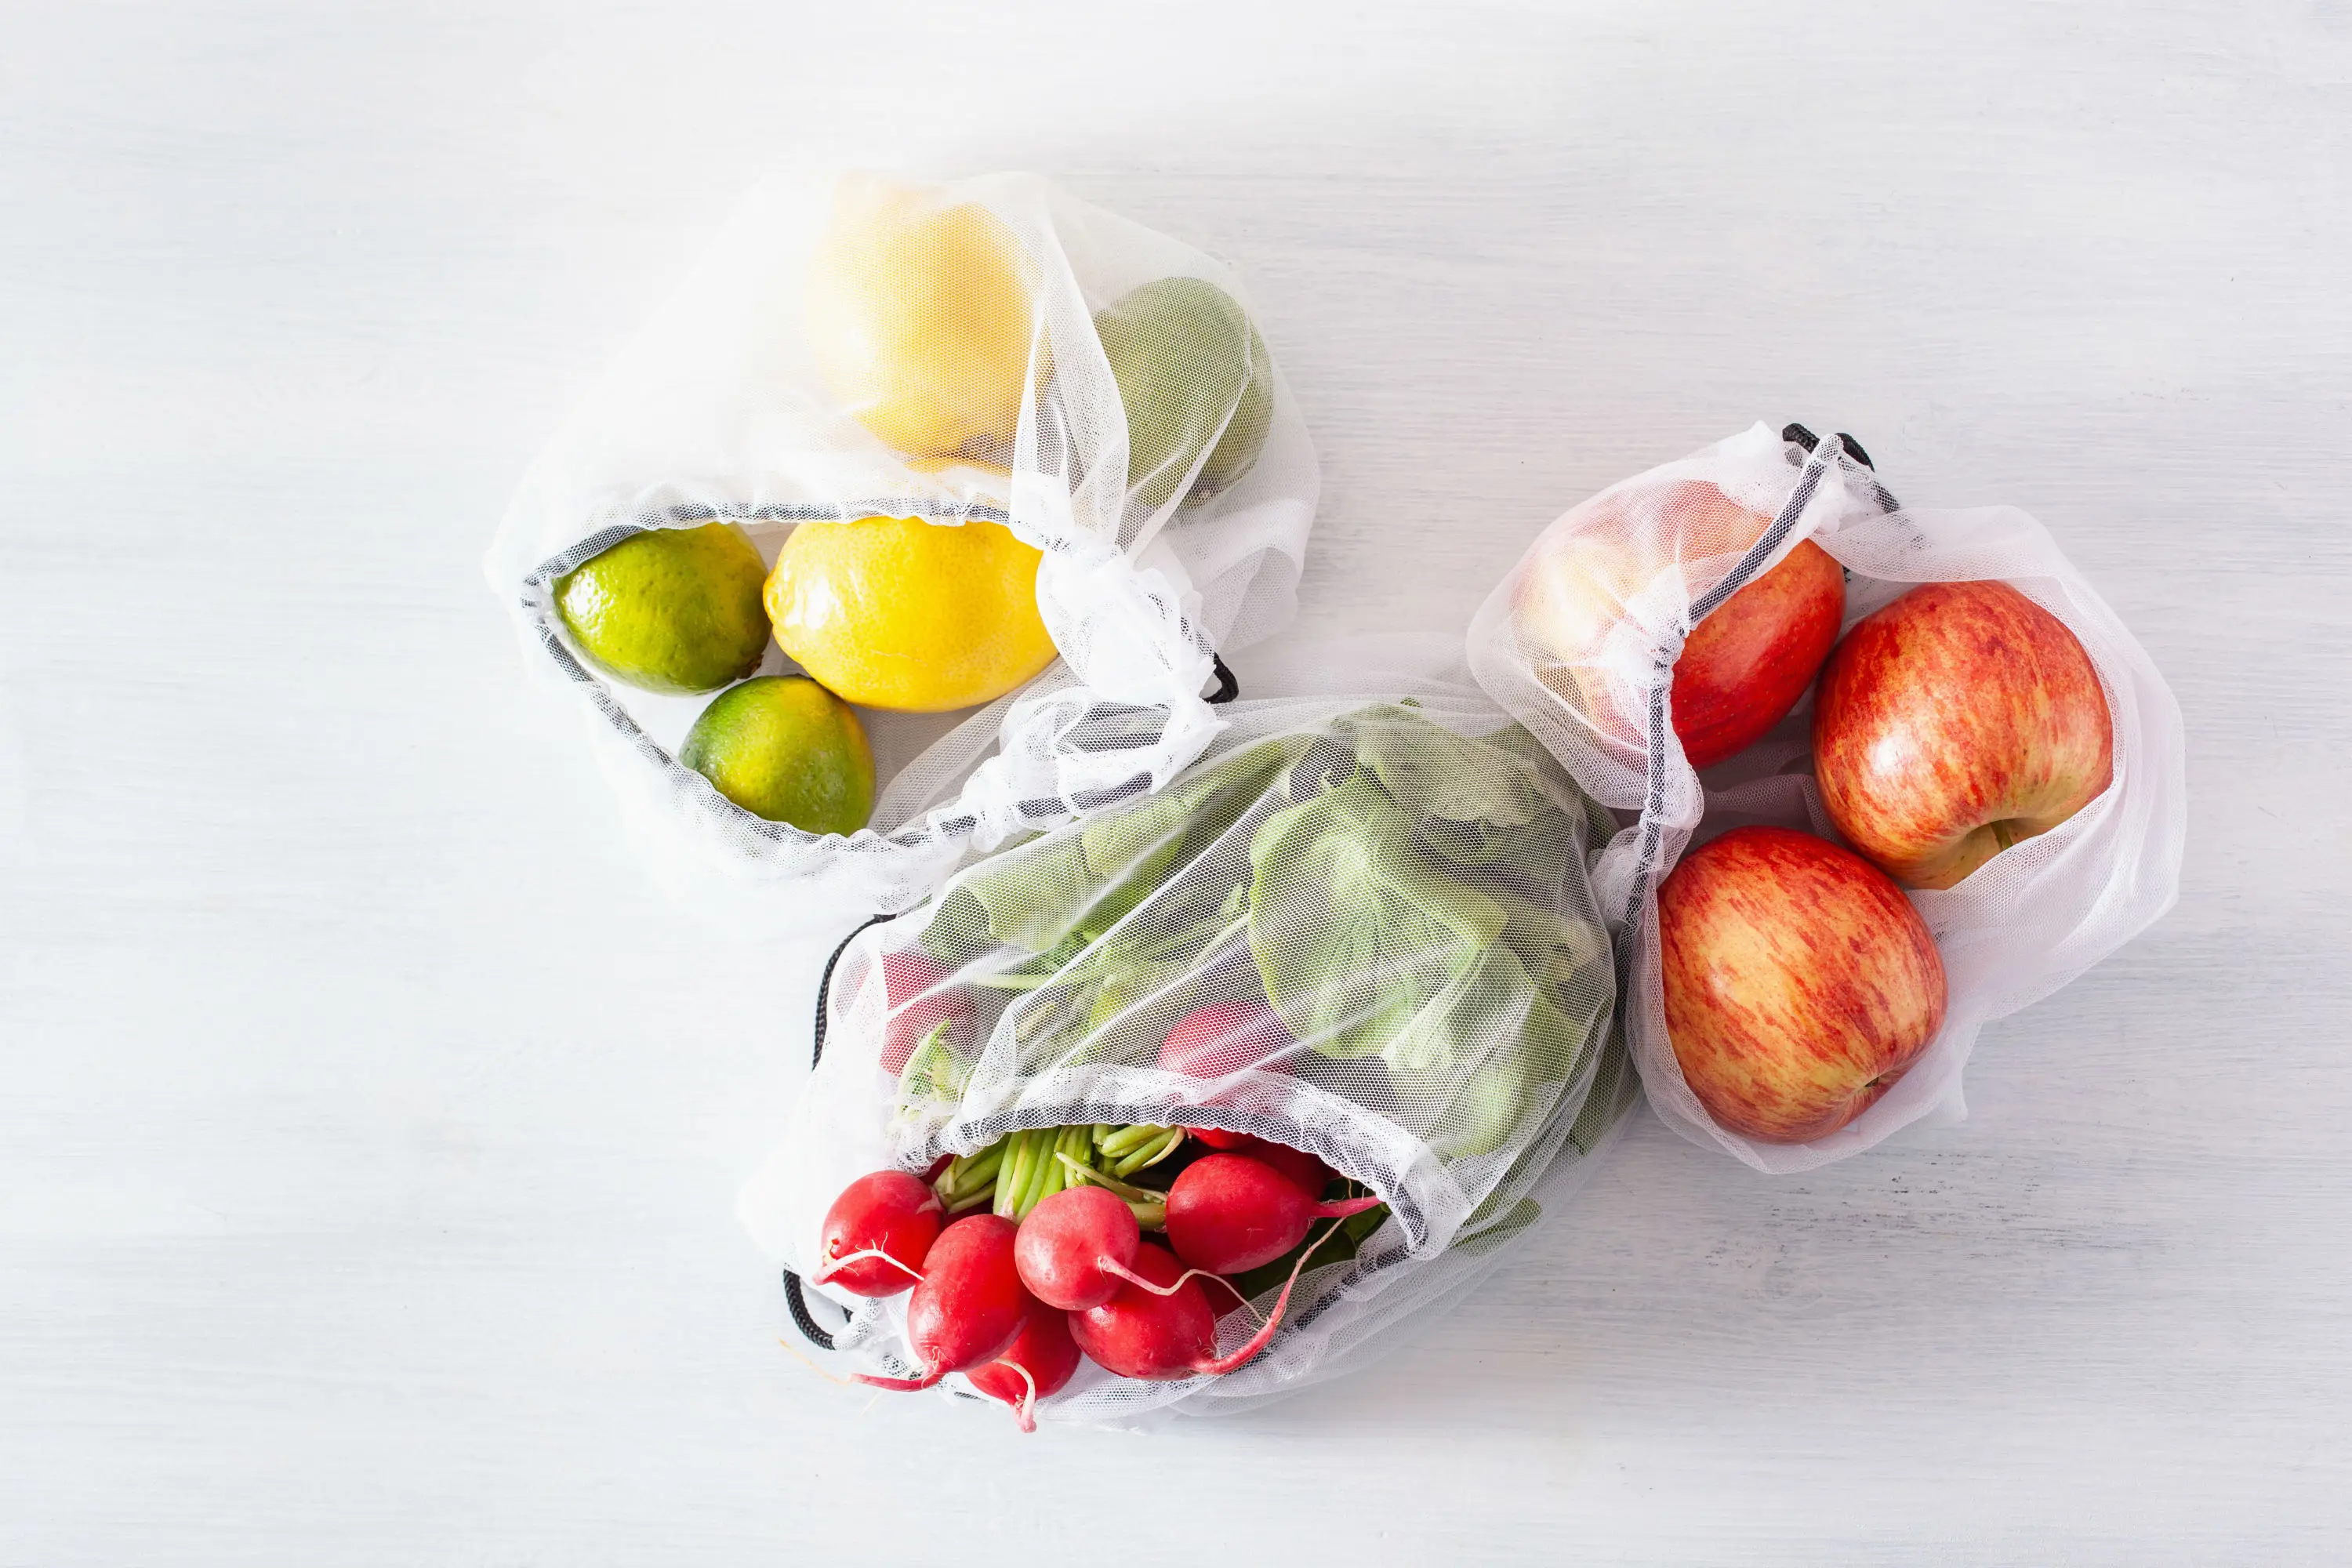 
New custom logo fruit vegetable shopping net mesh bags for packaging food storage 